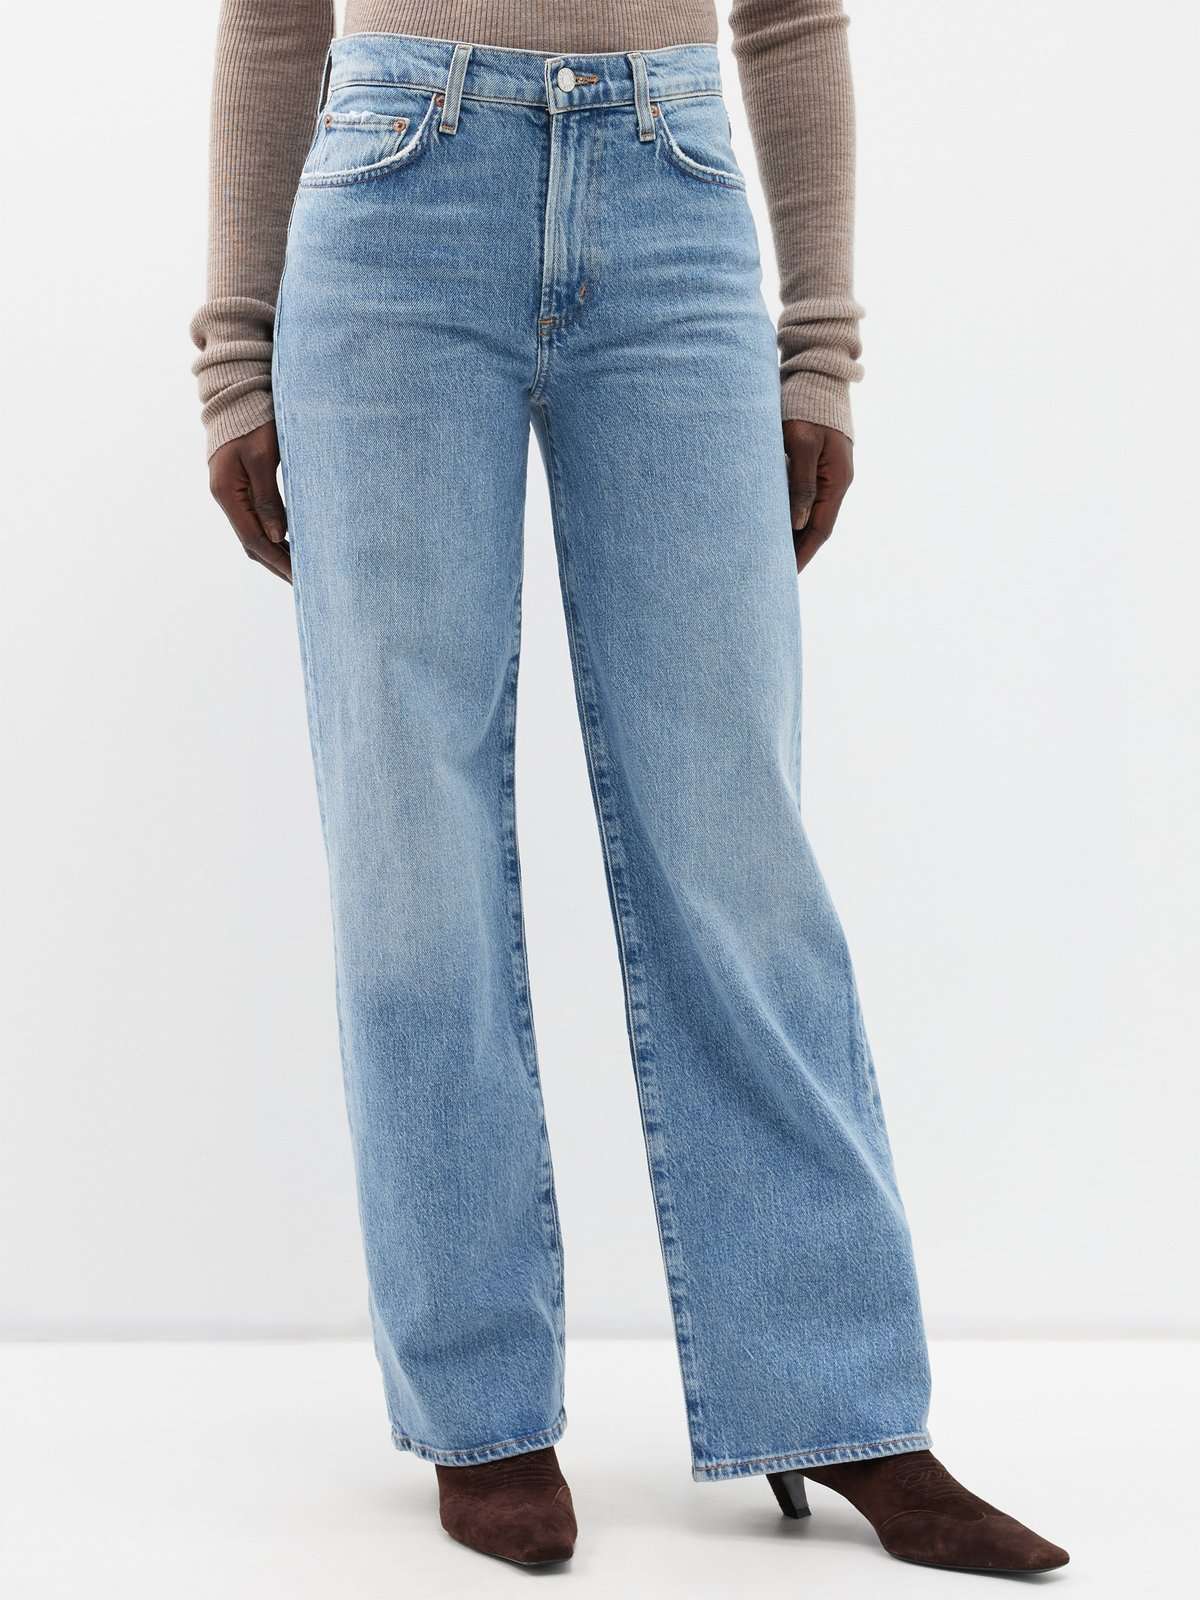 Широкие прямые джинсы Harper со средней посадкой